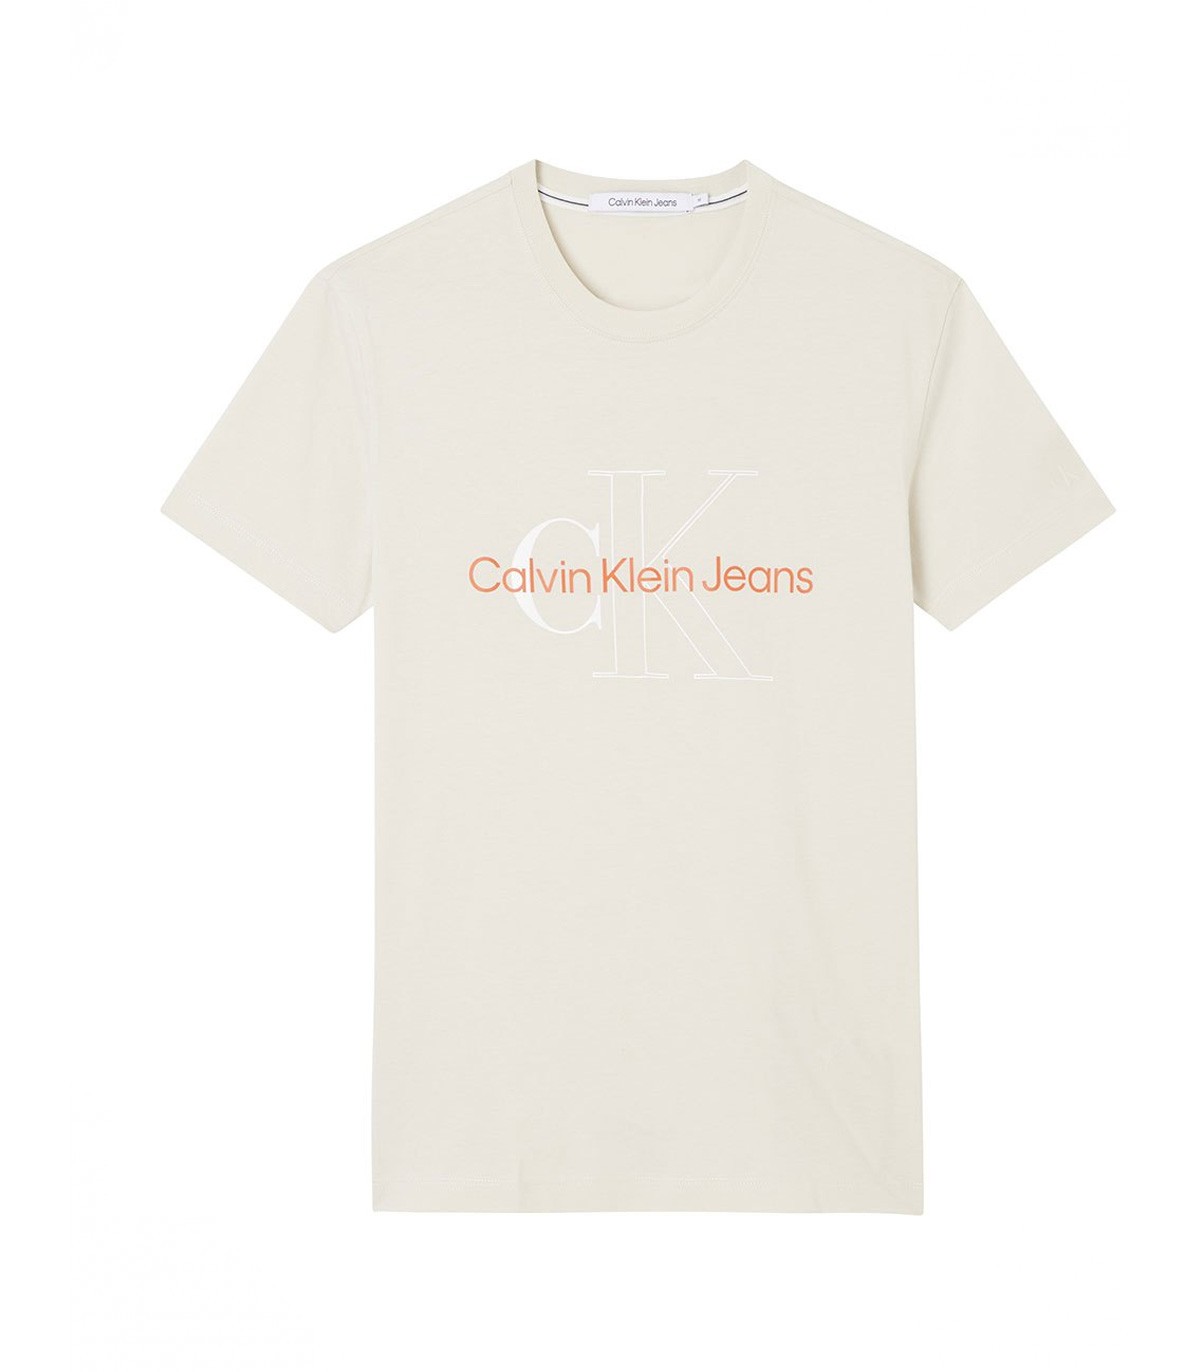 Calvin Klein Jeans - Camiseta Two Tone Monogram - Blanco